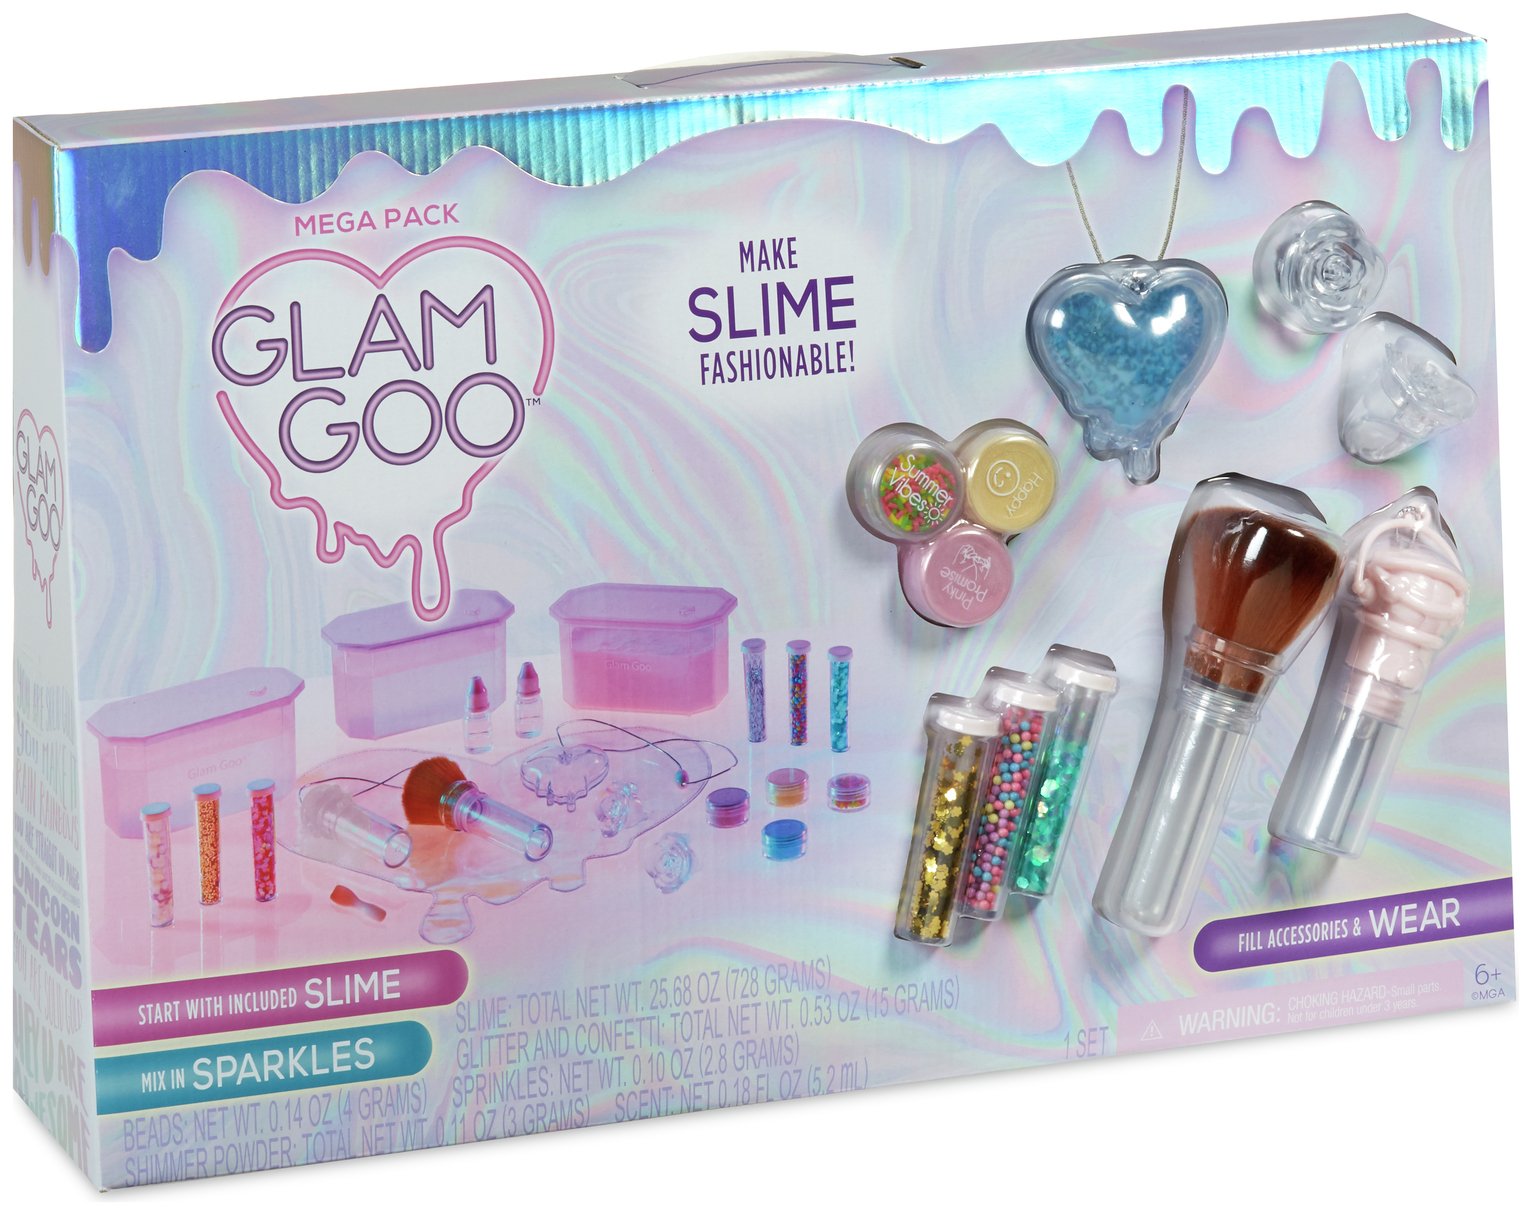 Glam Goo Slime Mega Pack